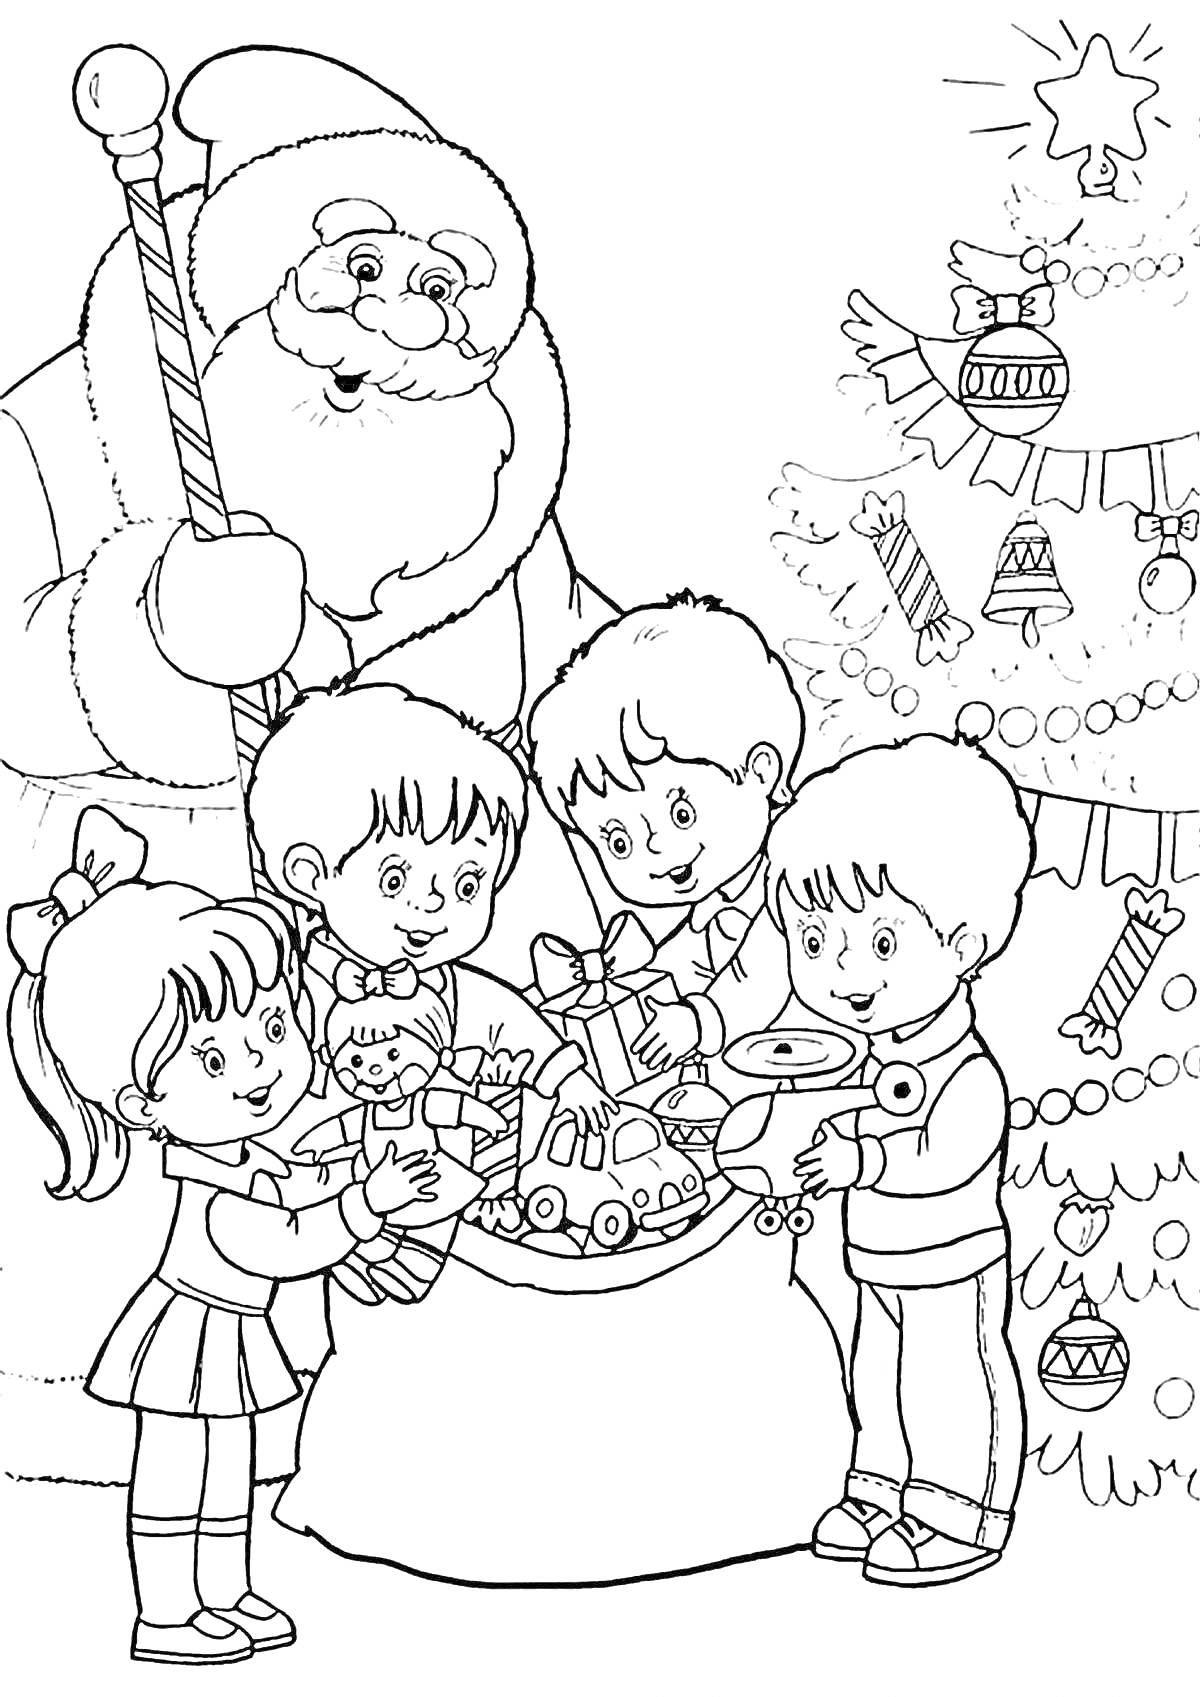 Раскраска Дед Мороз с мешком подарков, дети, елка с игрушками и гирляндами